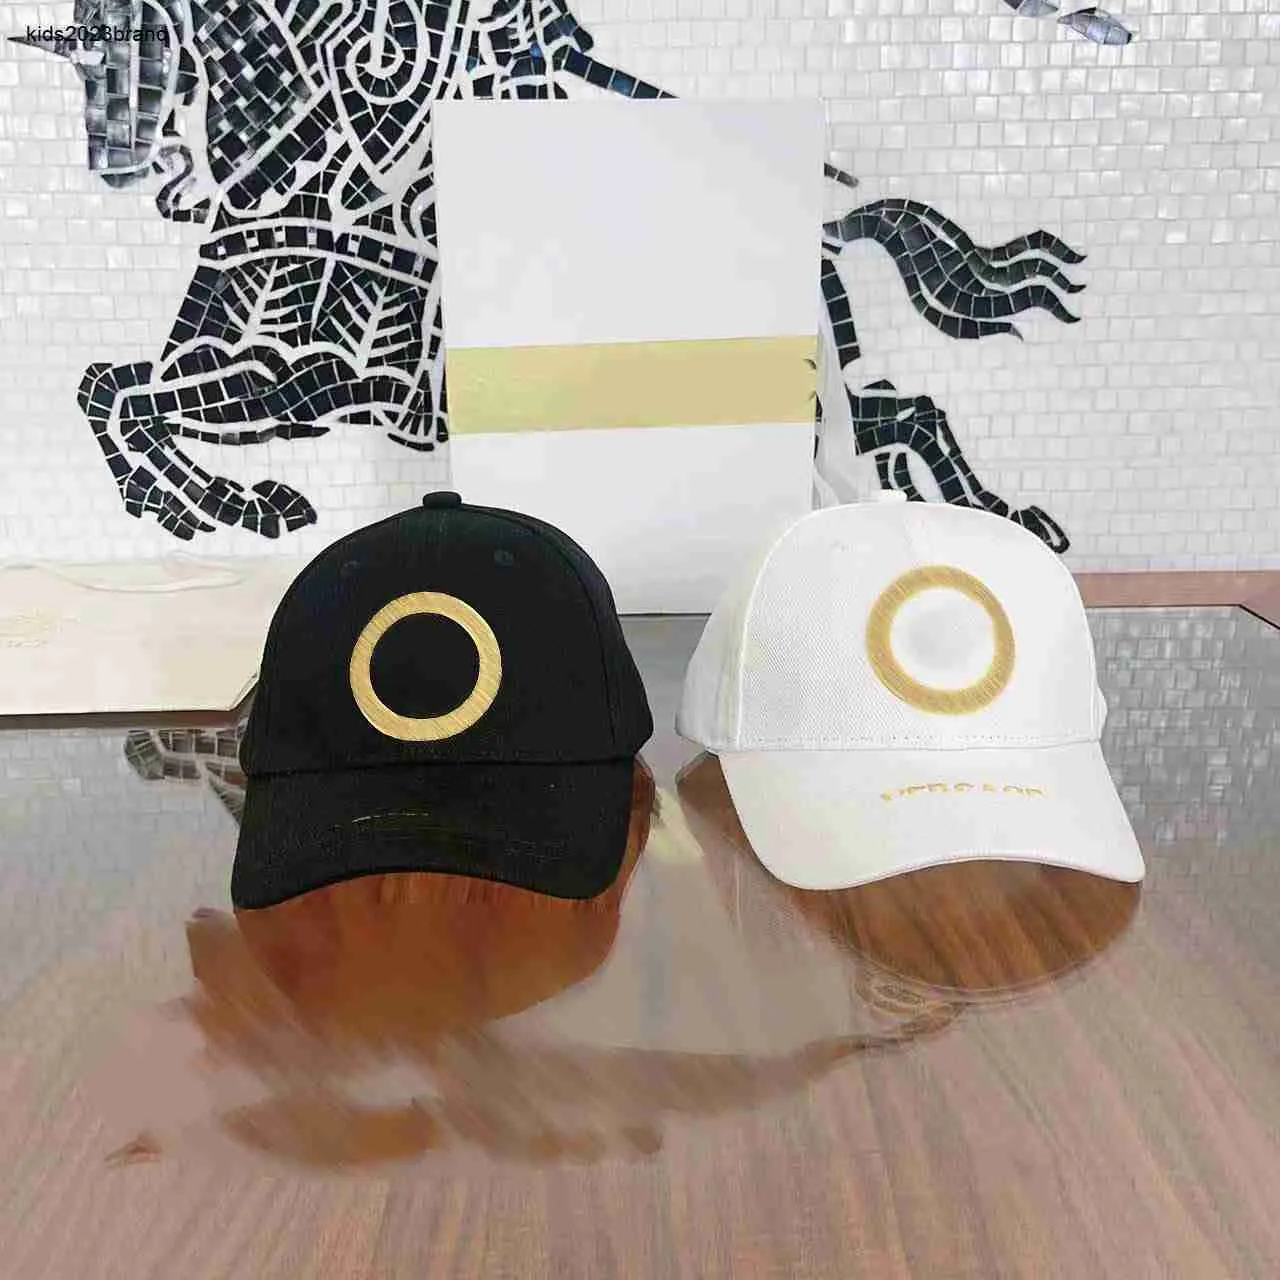 Nuovi cappelli firmati per bambini Ricamo in oro Cappello da sole per bambini Taglia 3-12 Confezione in scatola per ragazze Ragazzi Berretto da baseball Etichette complete 24Feb20